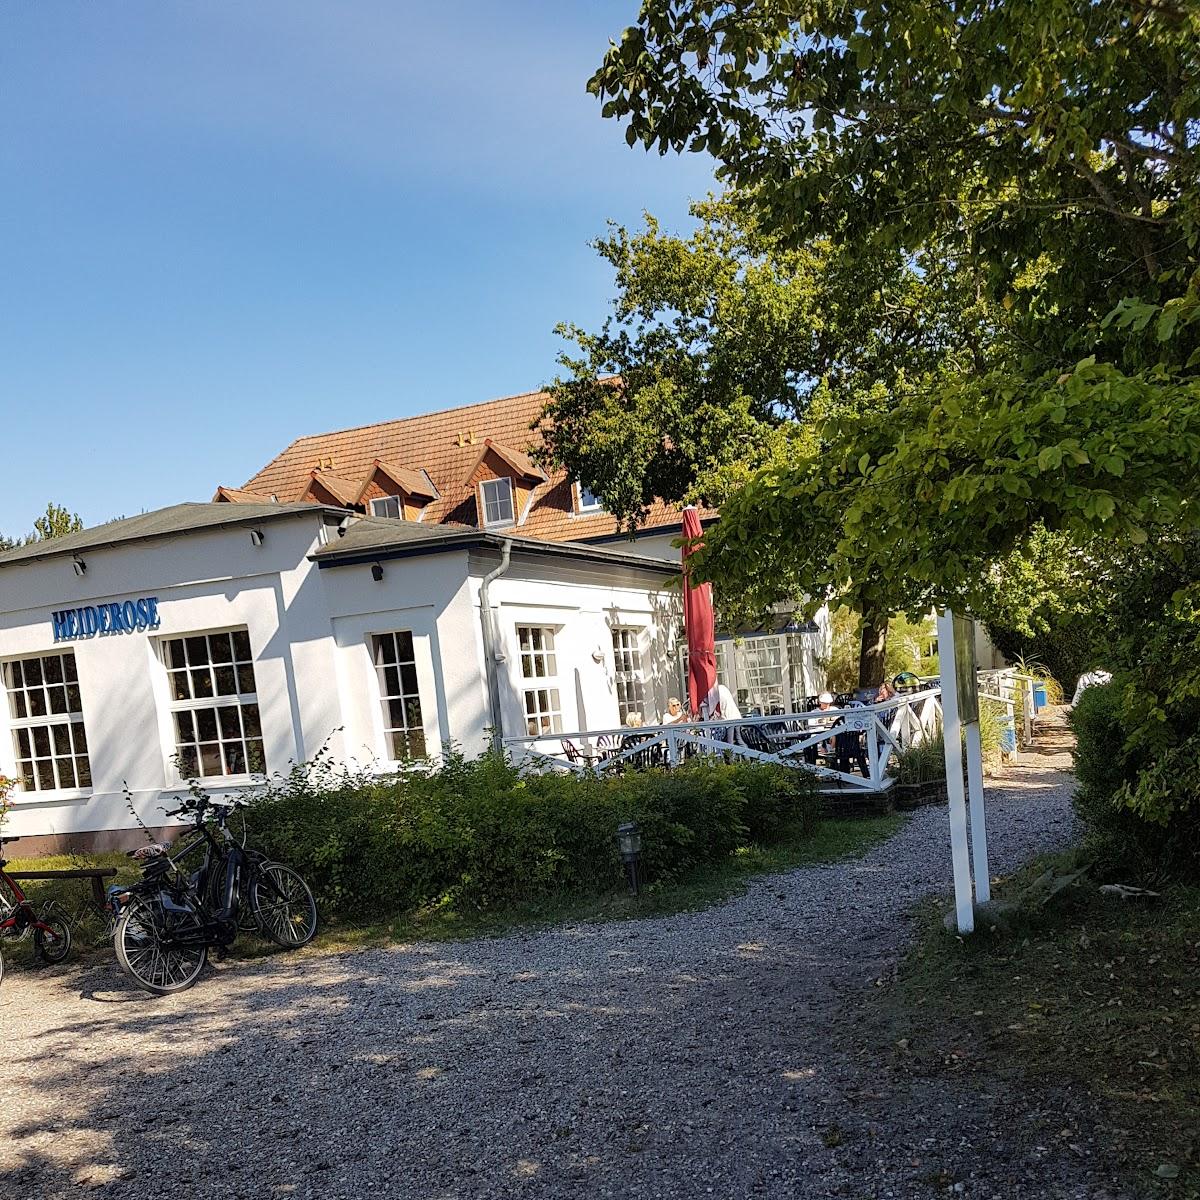 Restaurant "Heiderose Ferien-GmbH" in Insel Hiddensee